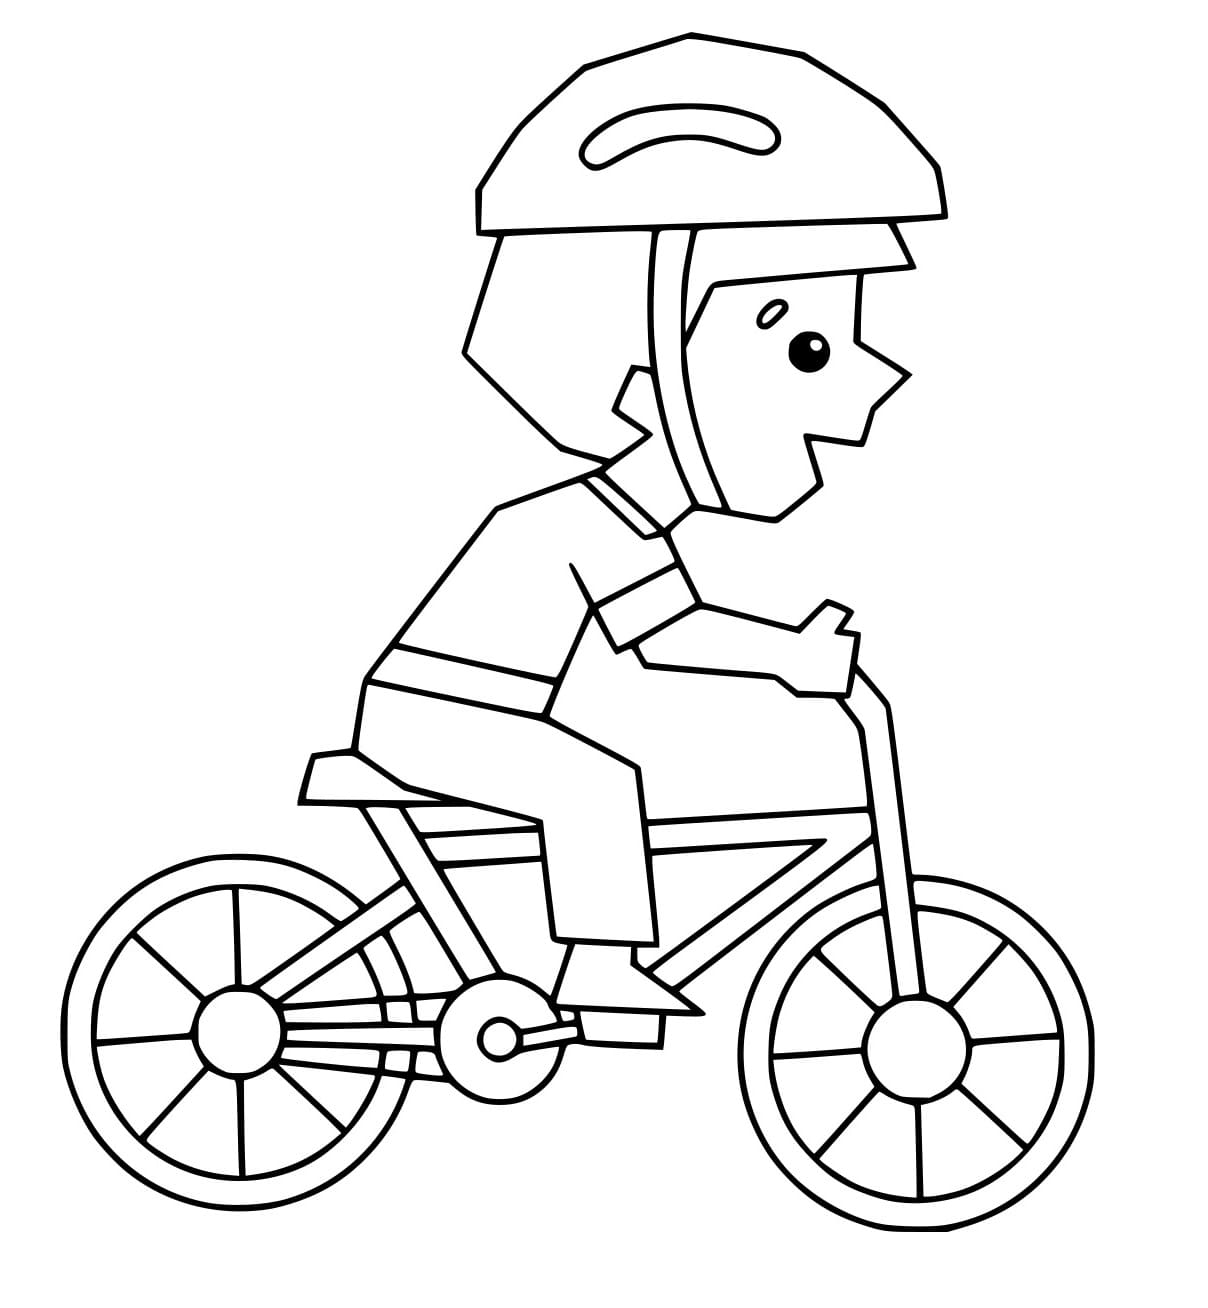 Junge auf einem Fahrrad